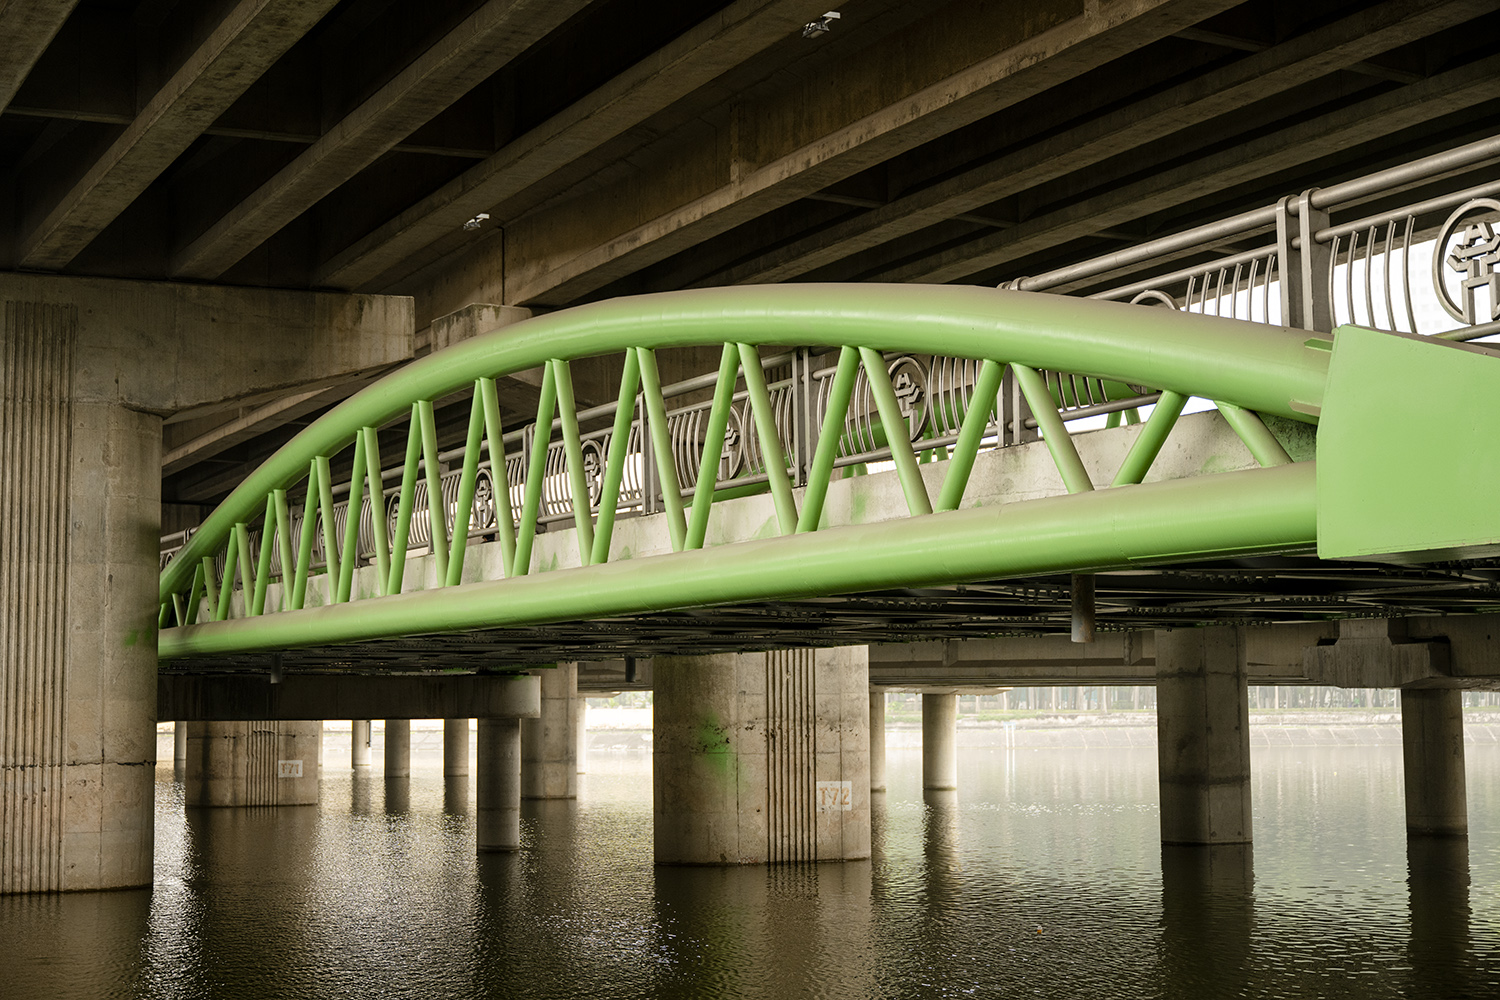 Hình ảnh không ngờ ở cây cầu có kiến trúc giống cầu cổ, giúp tài xế tránh nắng mưa - 5